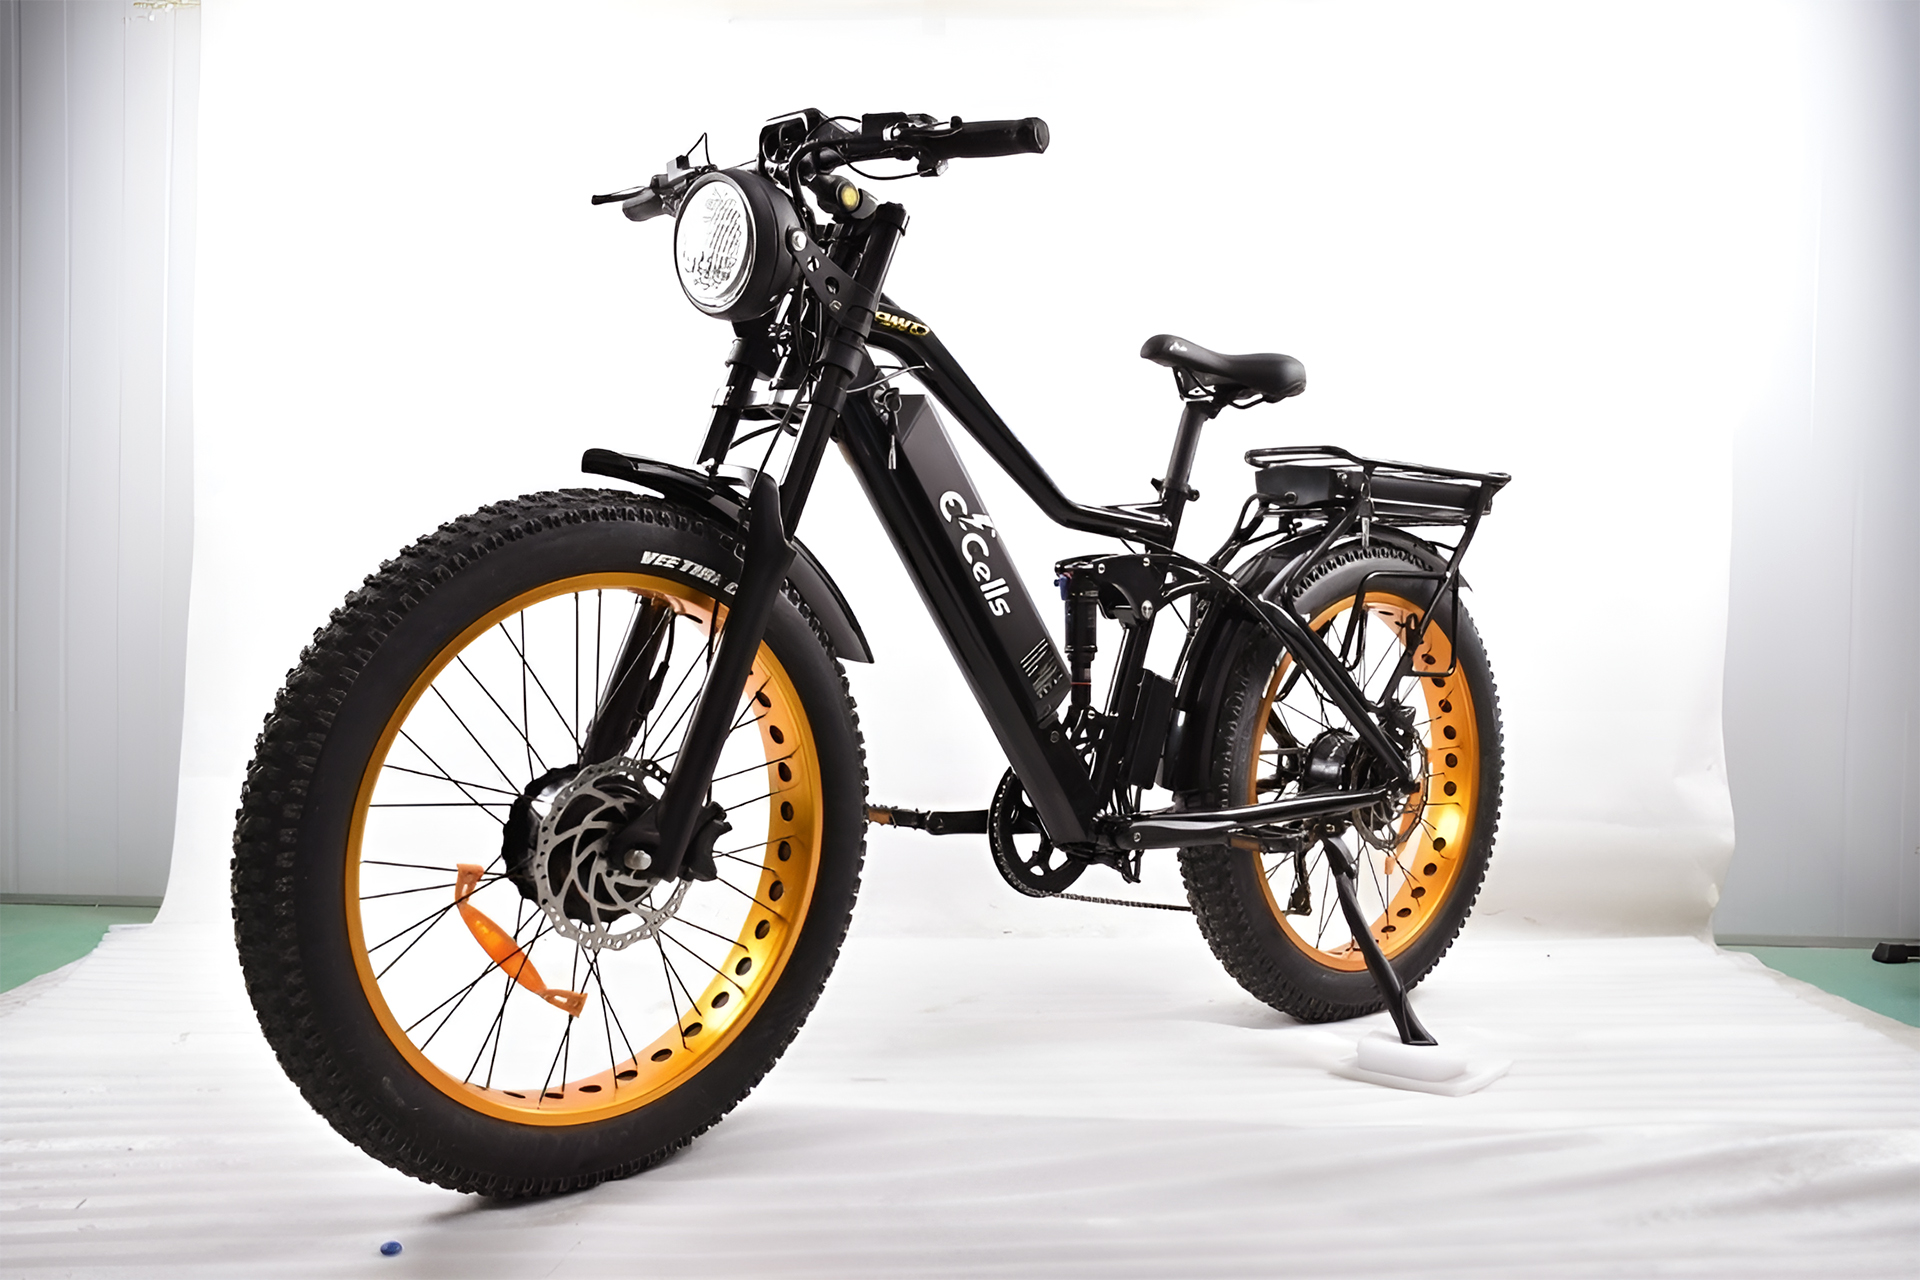 Bicicleta elétrica super potente com dois motores de 750W vem equipada com componentes premium e custa mais que uma moto 160cc